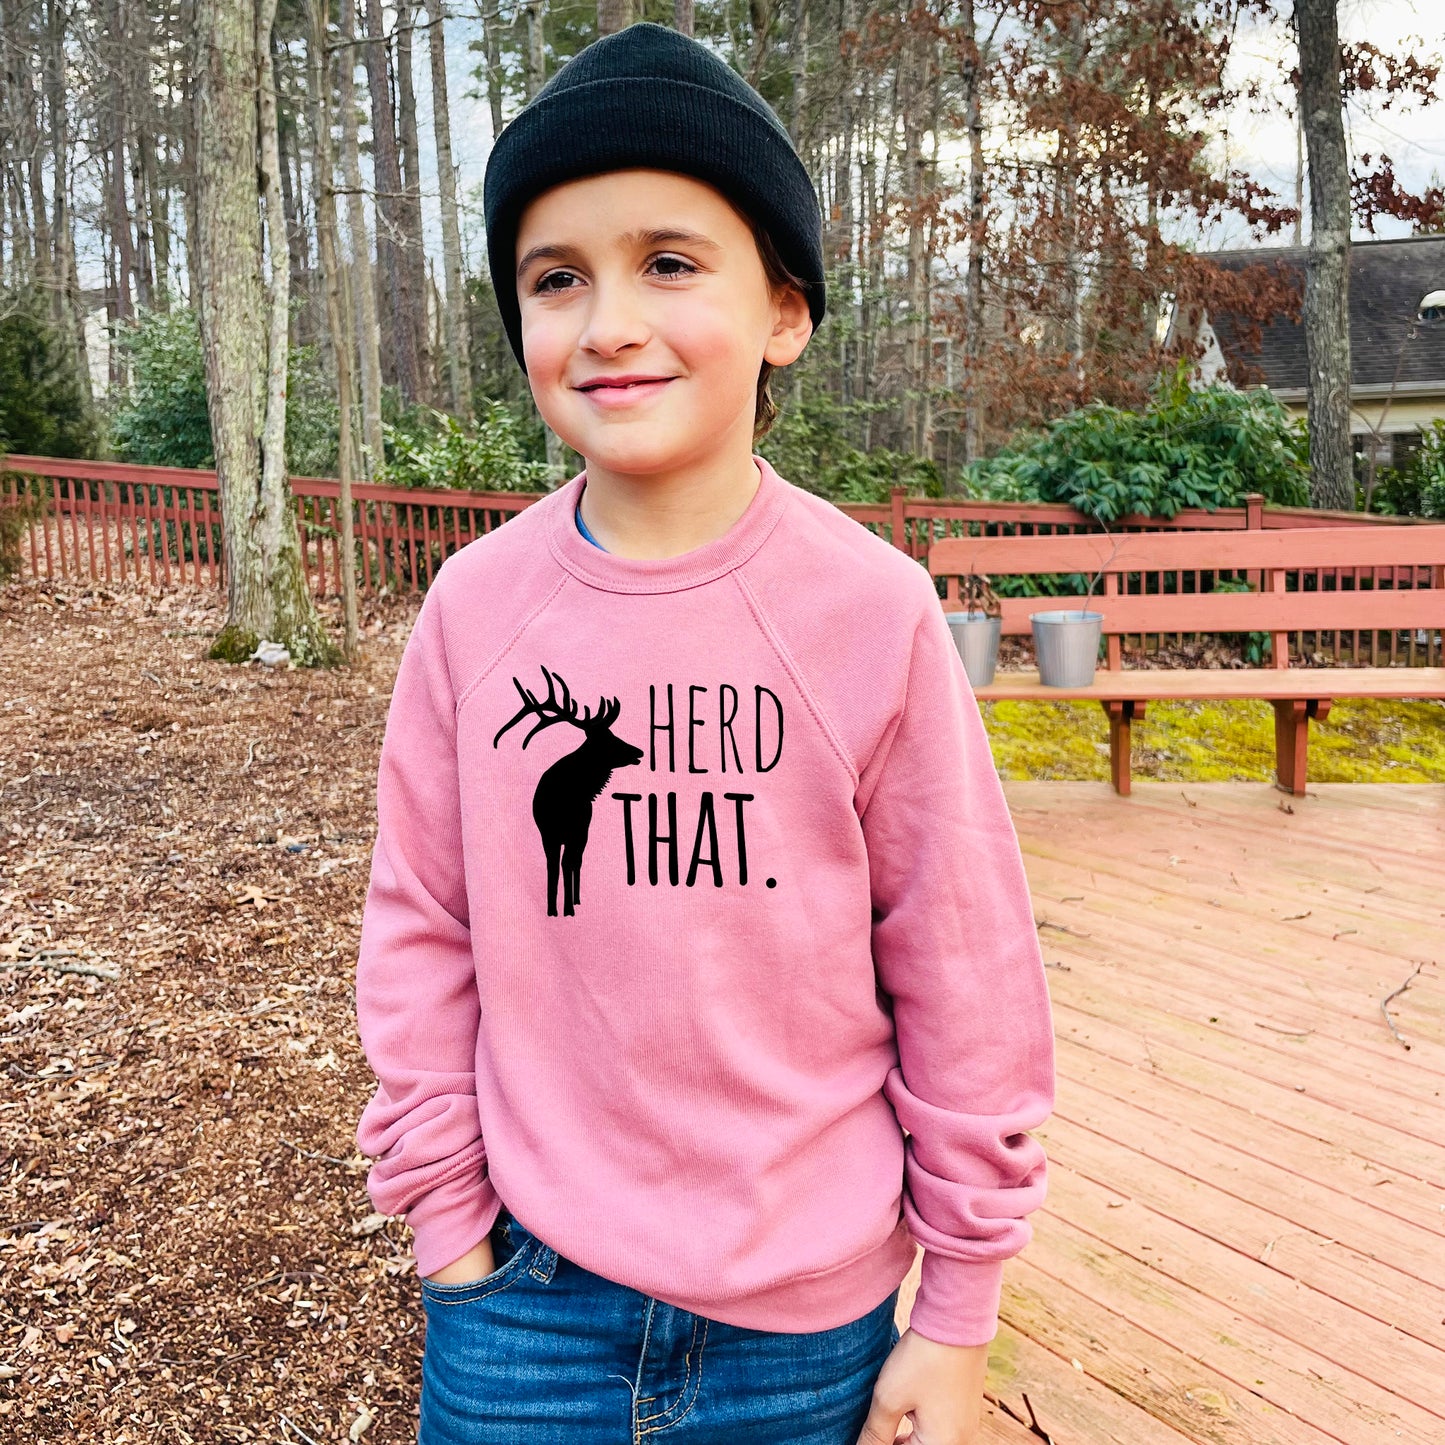 Herd That - Kid's Sweatshirt - Heather Gray or Mauve